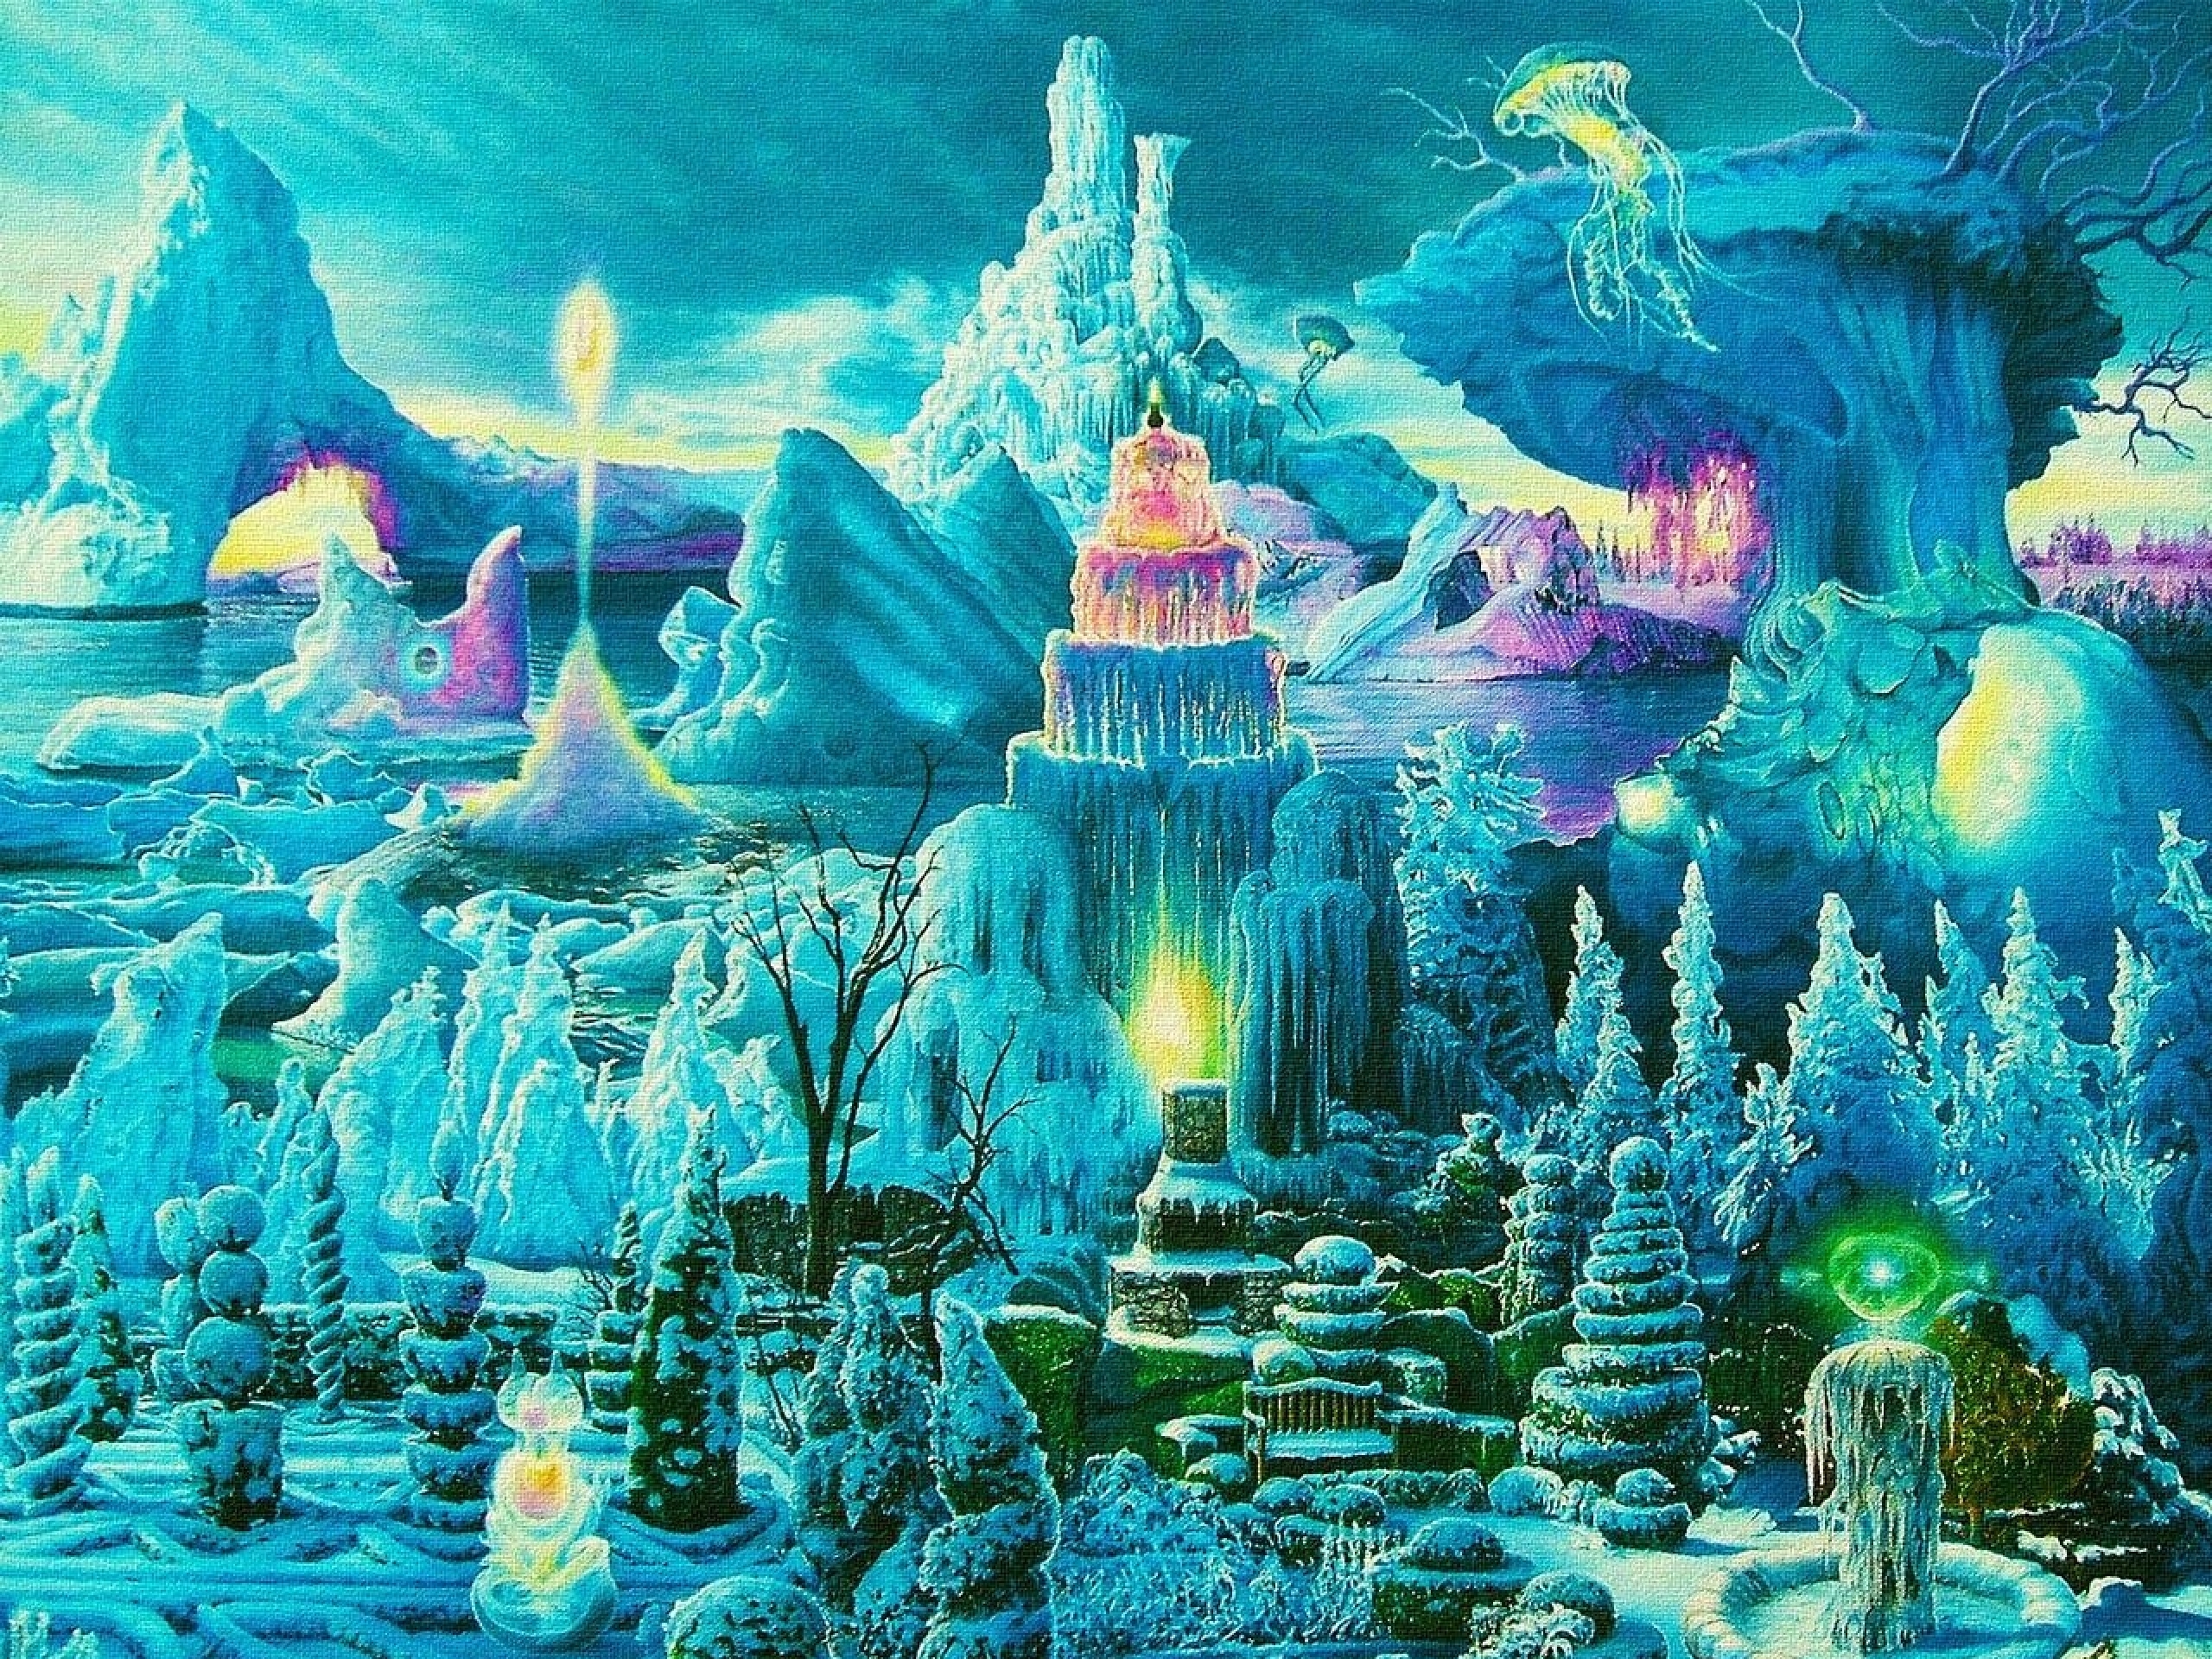 Trippy Underwater Art , HD Wallpaper & Backgrounds